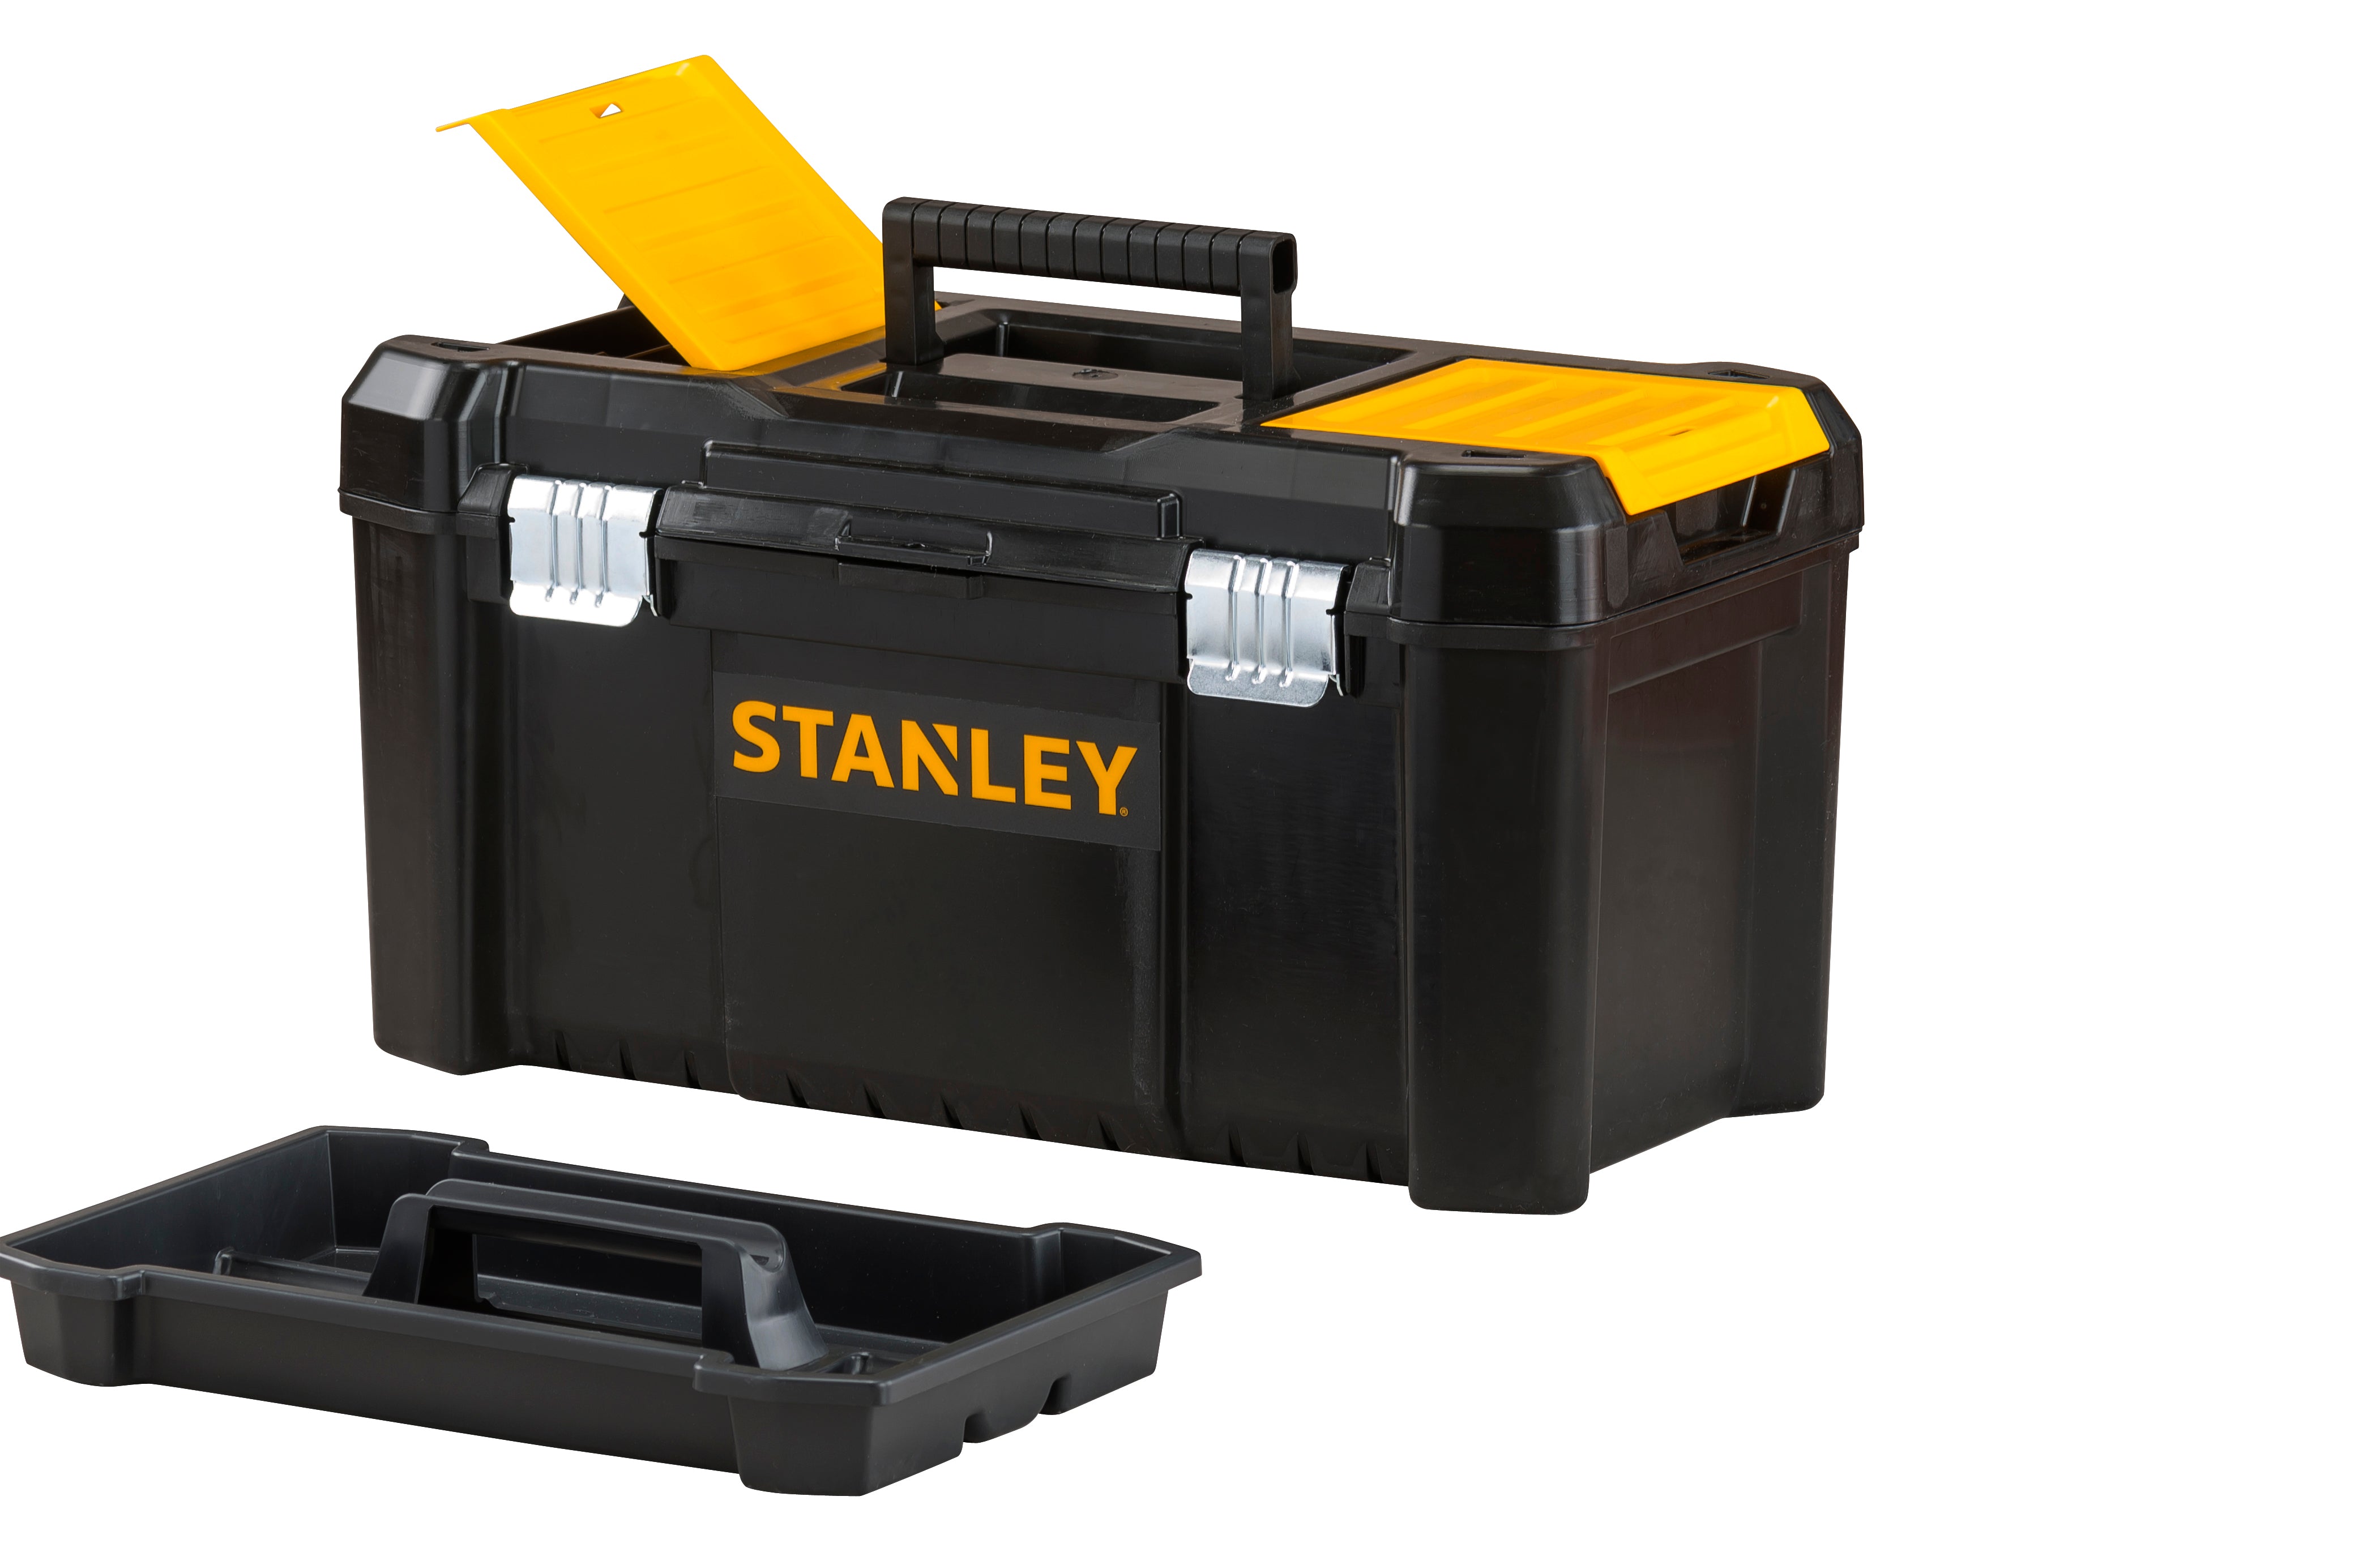 Stanley cassetta portautensili essential  cm. 48x25,5x25 h - Stanley